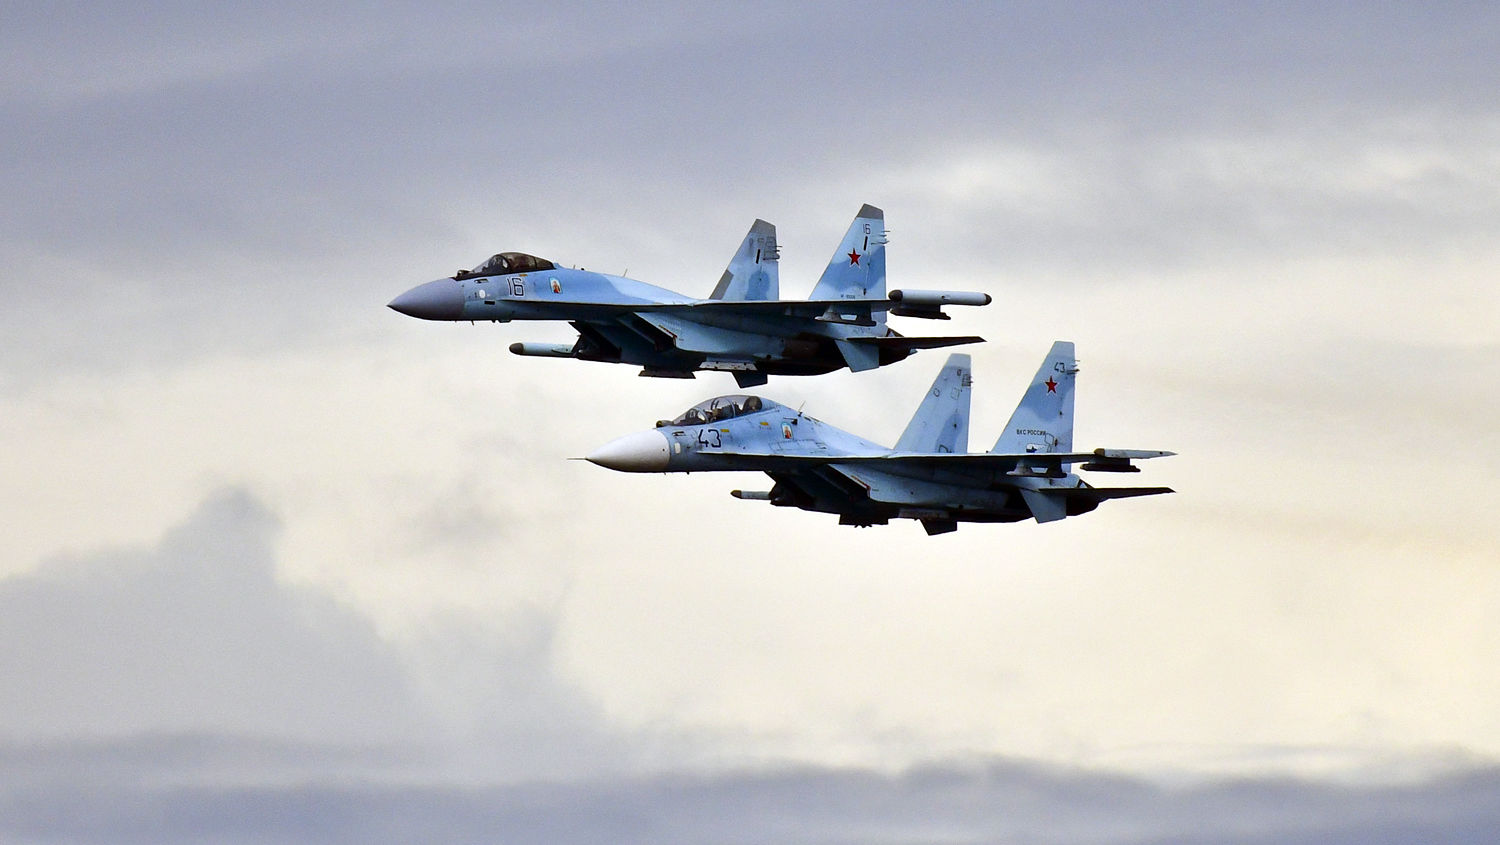 Βίντεο: 4 μαχητικά Su-35 συνόδεψαν τον Βλαντίμιρ Πούτιν στα ΗΑΕ - Έλαβε άδεια διέλευσης από 3 χώρες αν και «απομονωμένος»